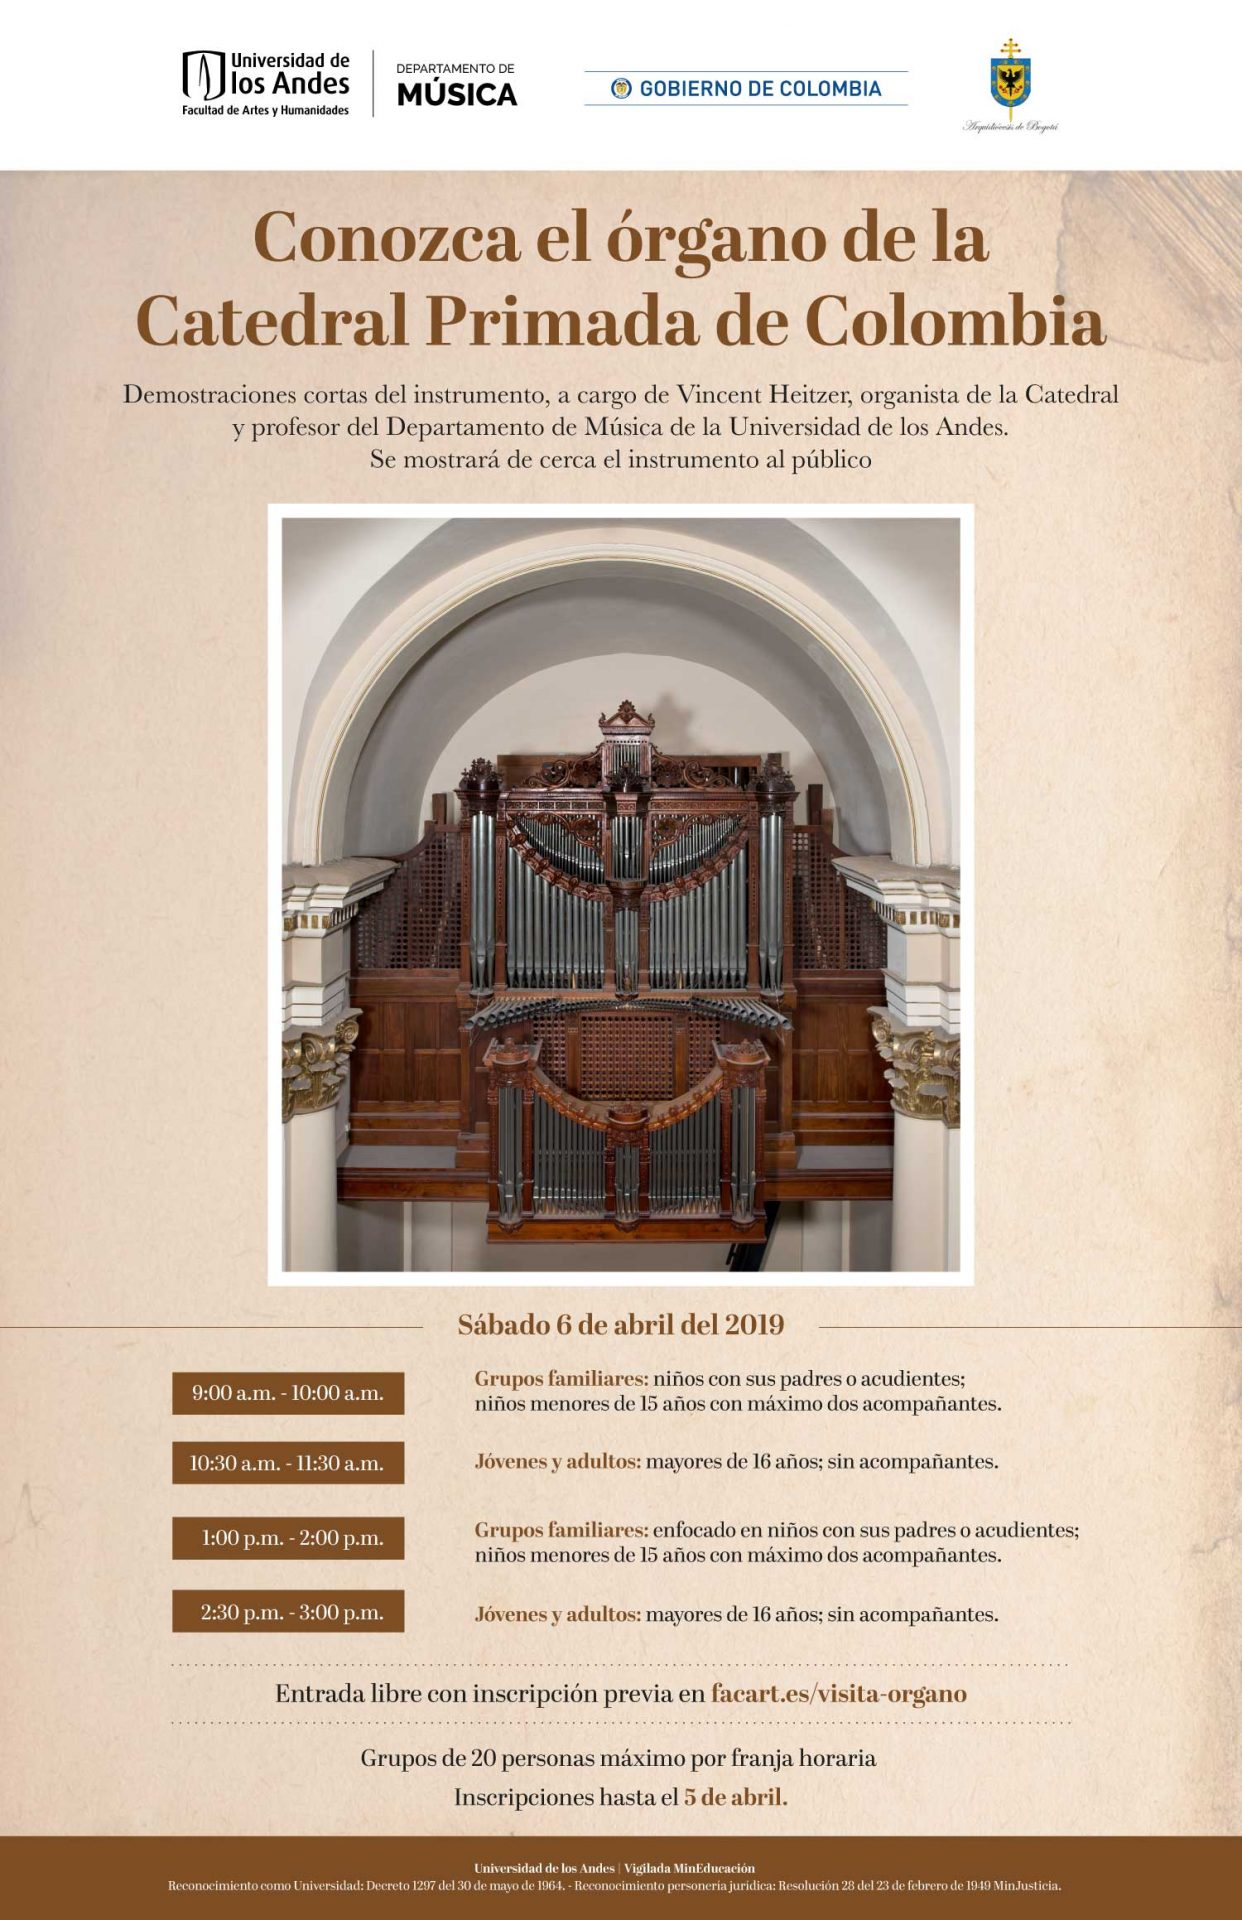 Demostraciones cortas del instrumento, a cargo de Vincent Heitzer, organista de la Catedral. Se mostrará de cerca el instrumento al público.